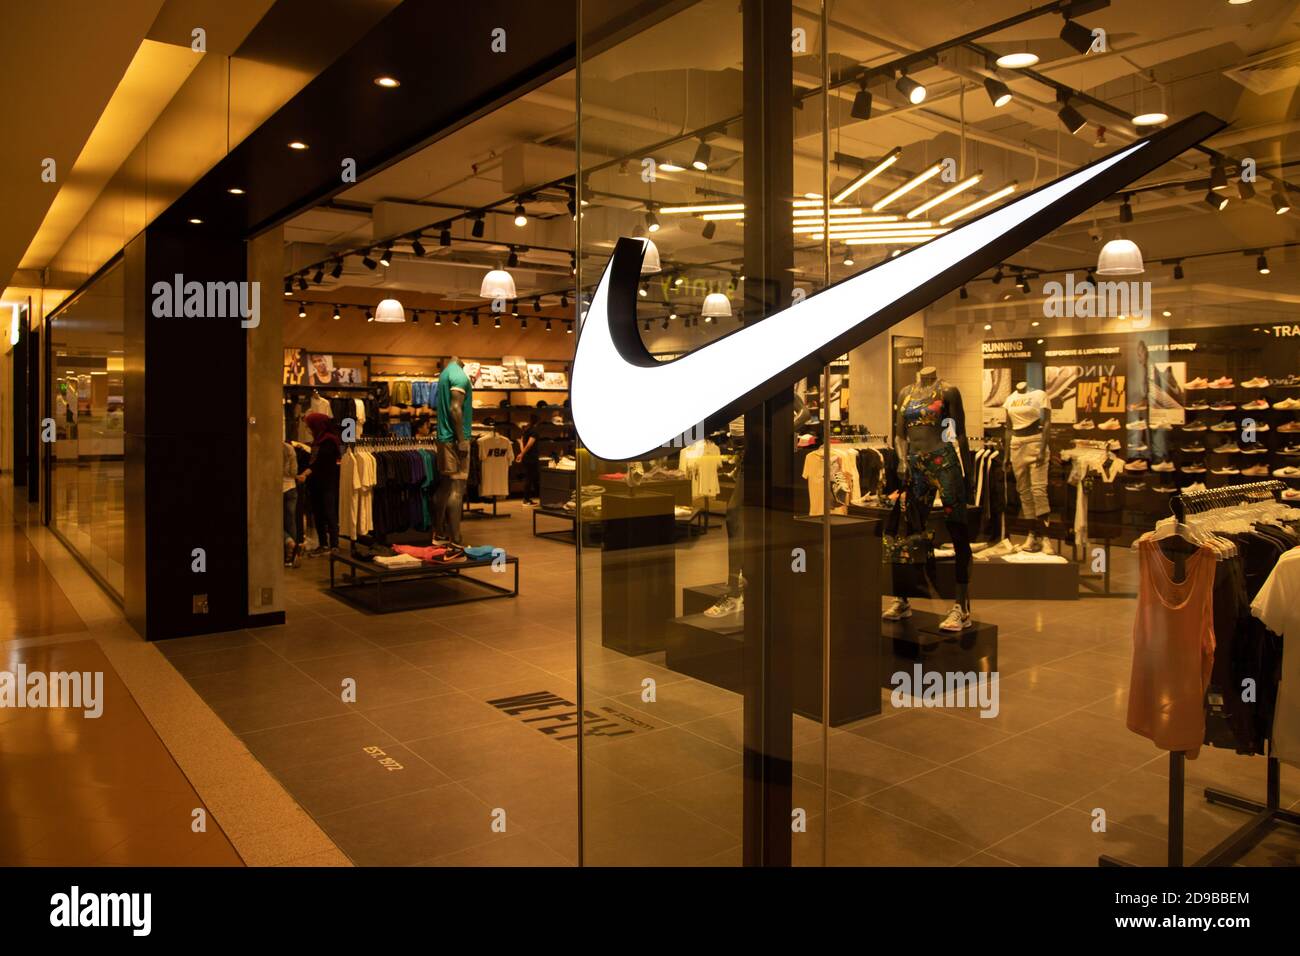 Nike, Inc. Est une multinationale américaine qui commercialise des chaussures, des vêtements, des équipements, des accessoires et des services dans le monde entier. Banque D'Images